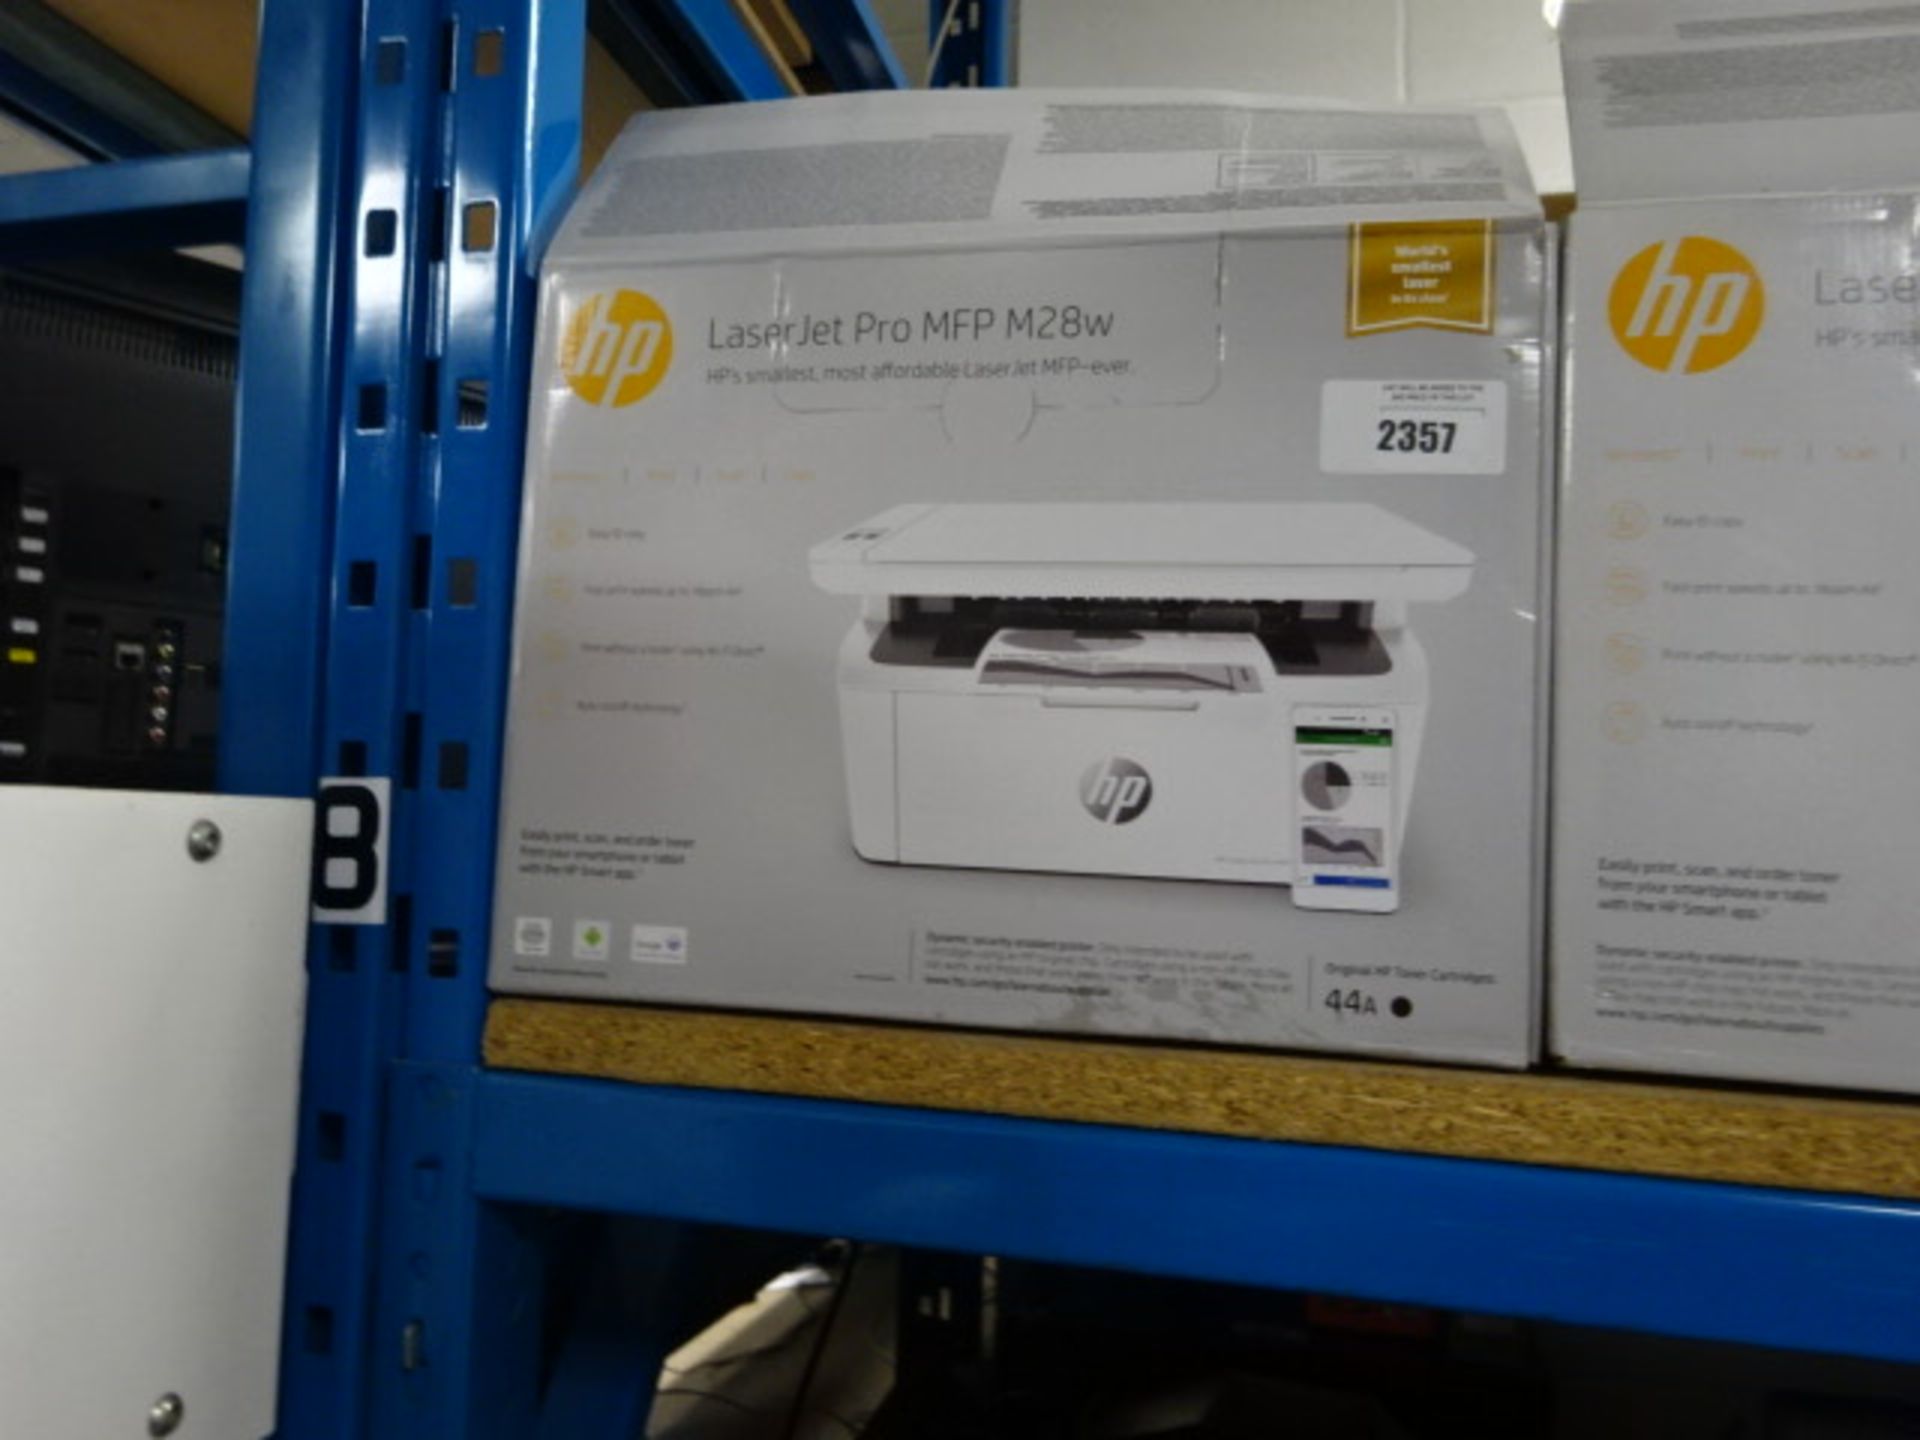 HP laserjet pro MFP-M28W printer in box